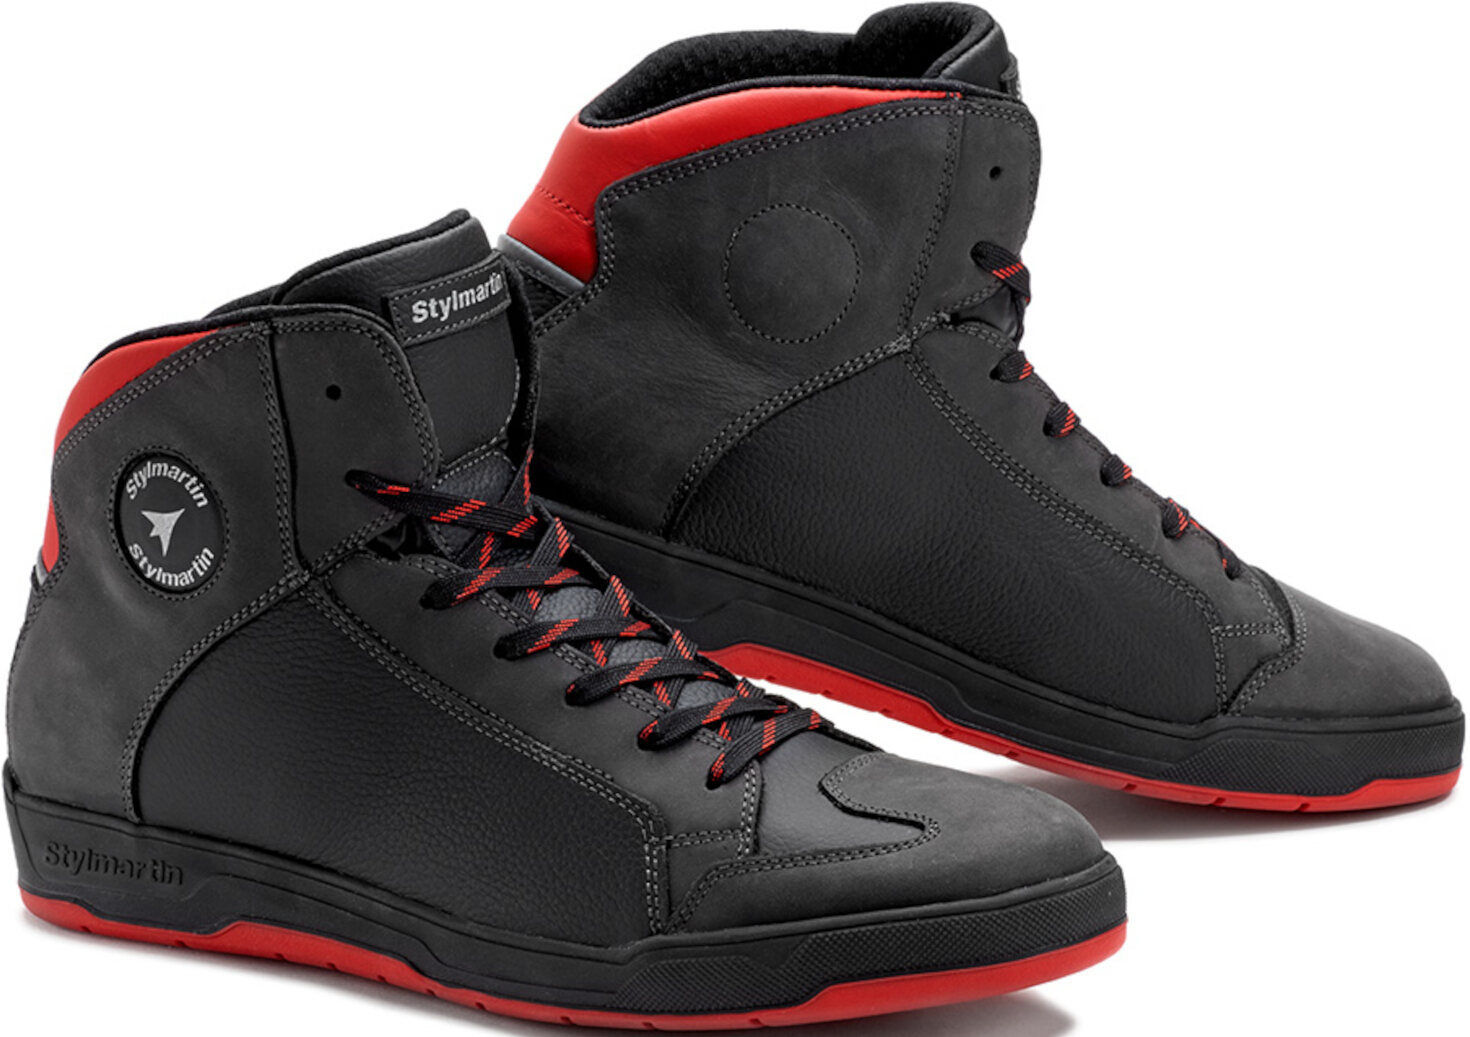 Stylmartin Double Zapatos de motocicleta impermeables - Negro Rojo (39)